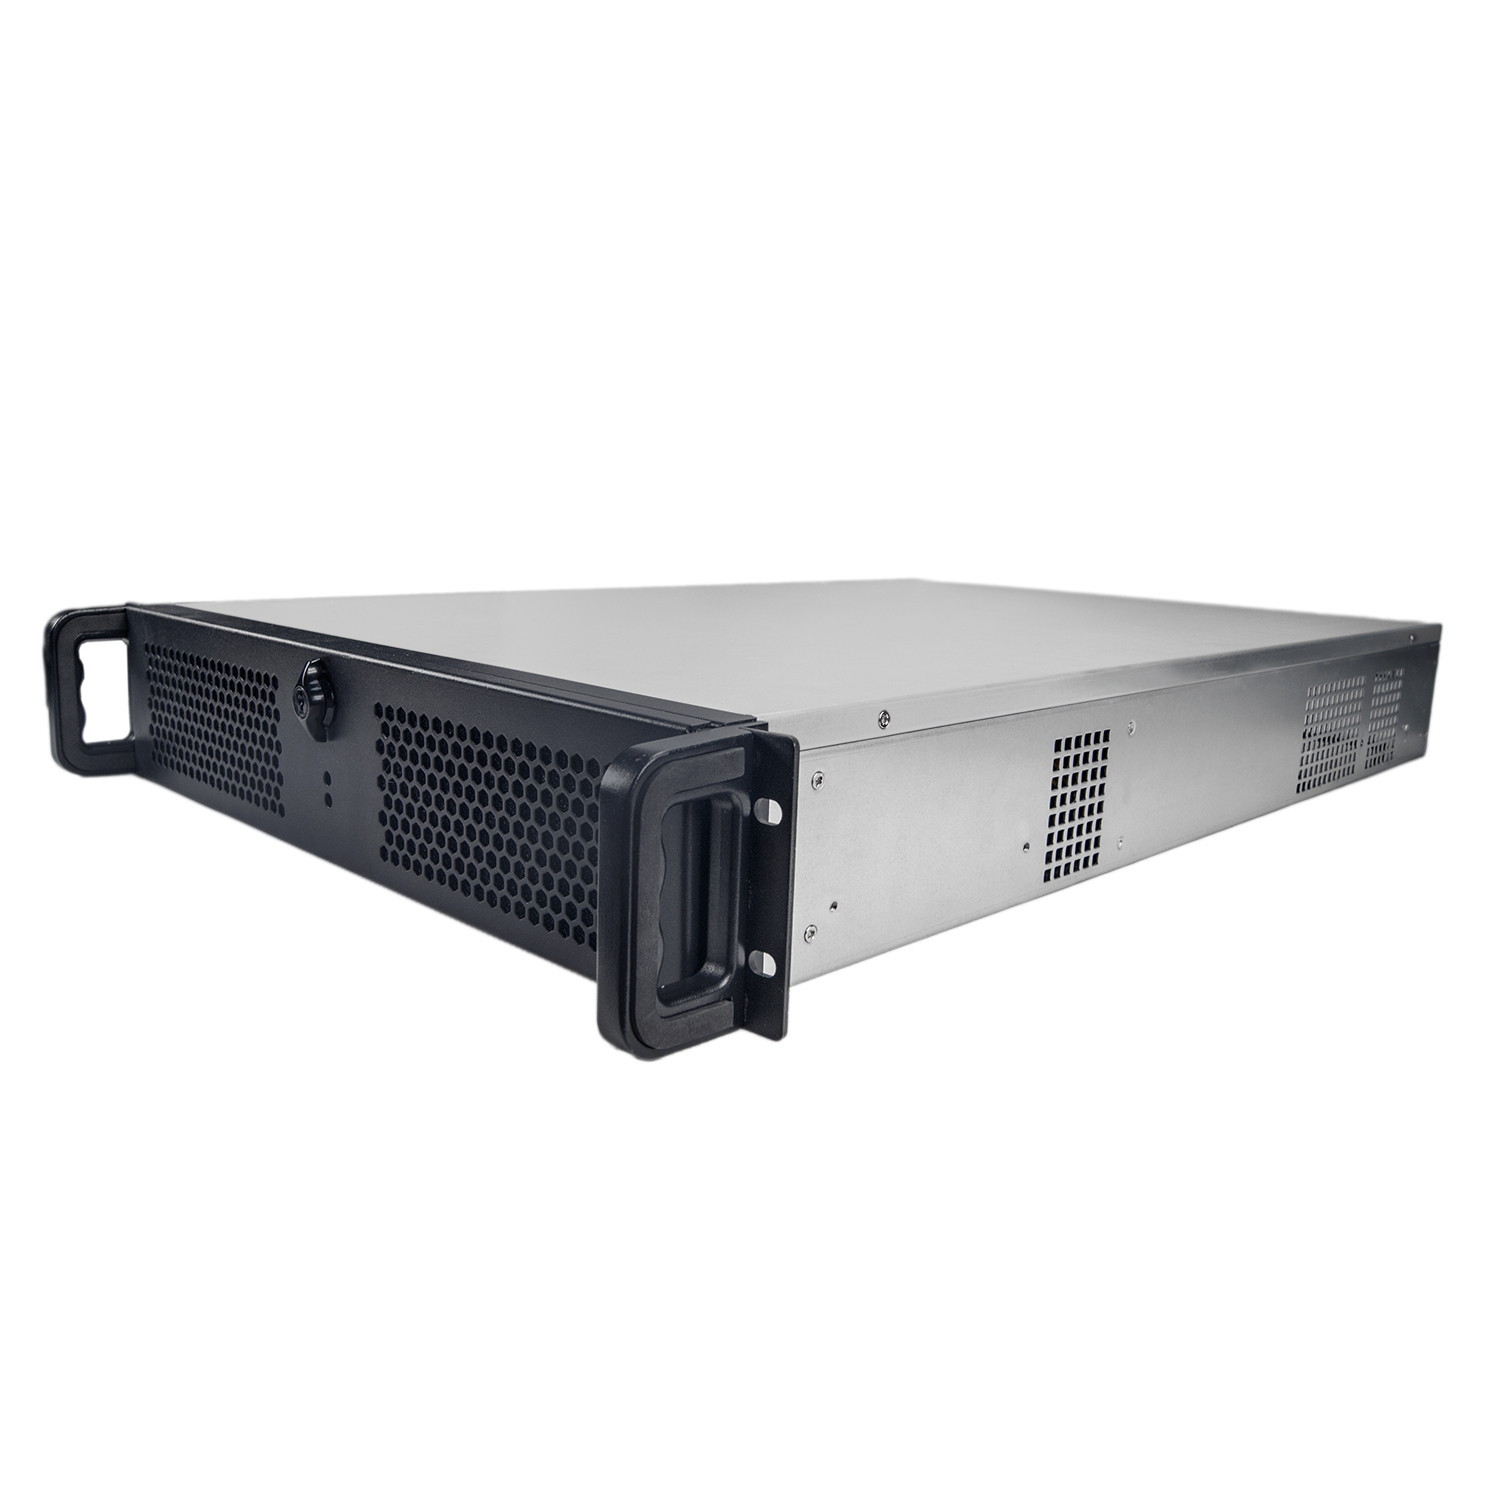 Серверный корпус 2U NR-N2066D (EATX 12x13, 2x5.25ext, 9x3.5int, 660mm) чёрный, NegoRack